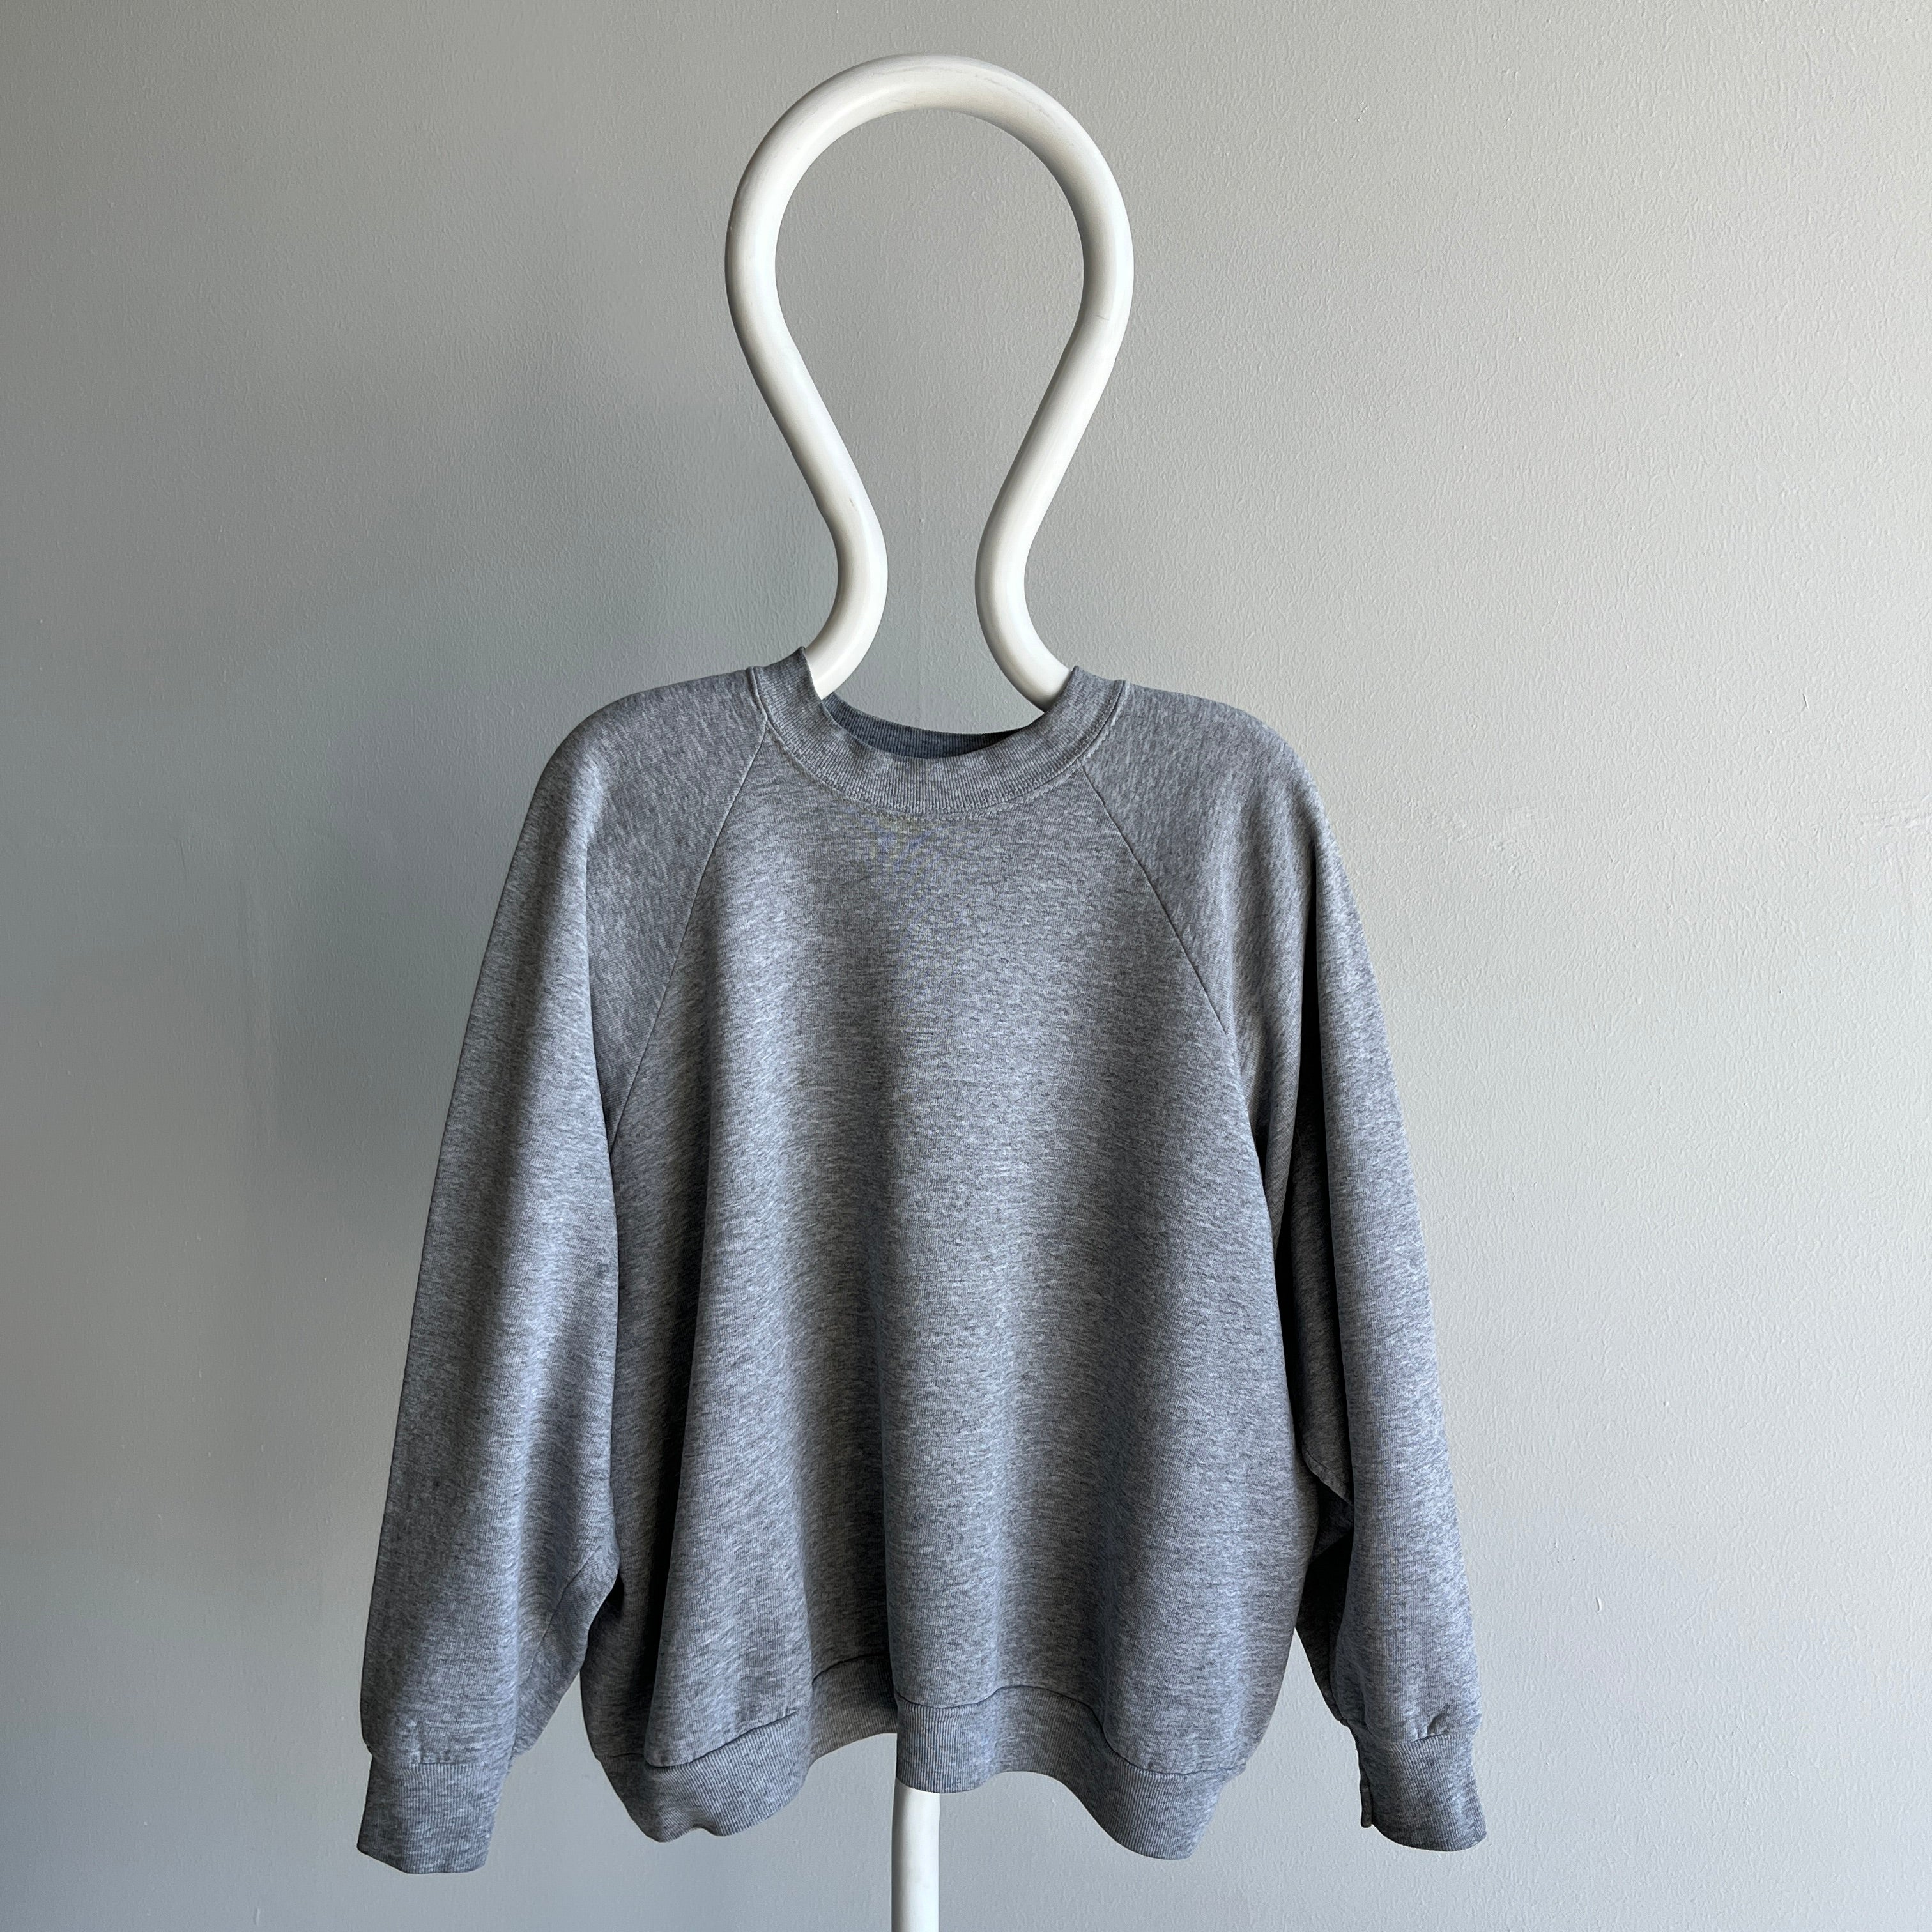 1990s Blank Gray FOTL Easy Breezy Gray Sweatshirt - Great Cut + Staining